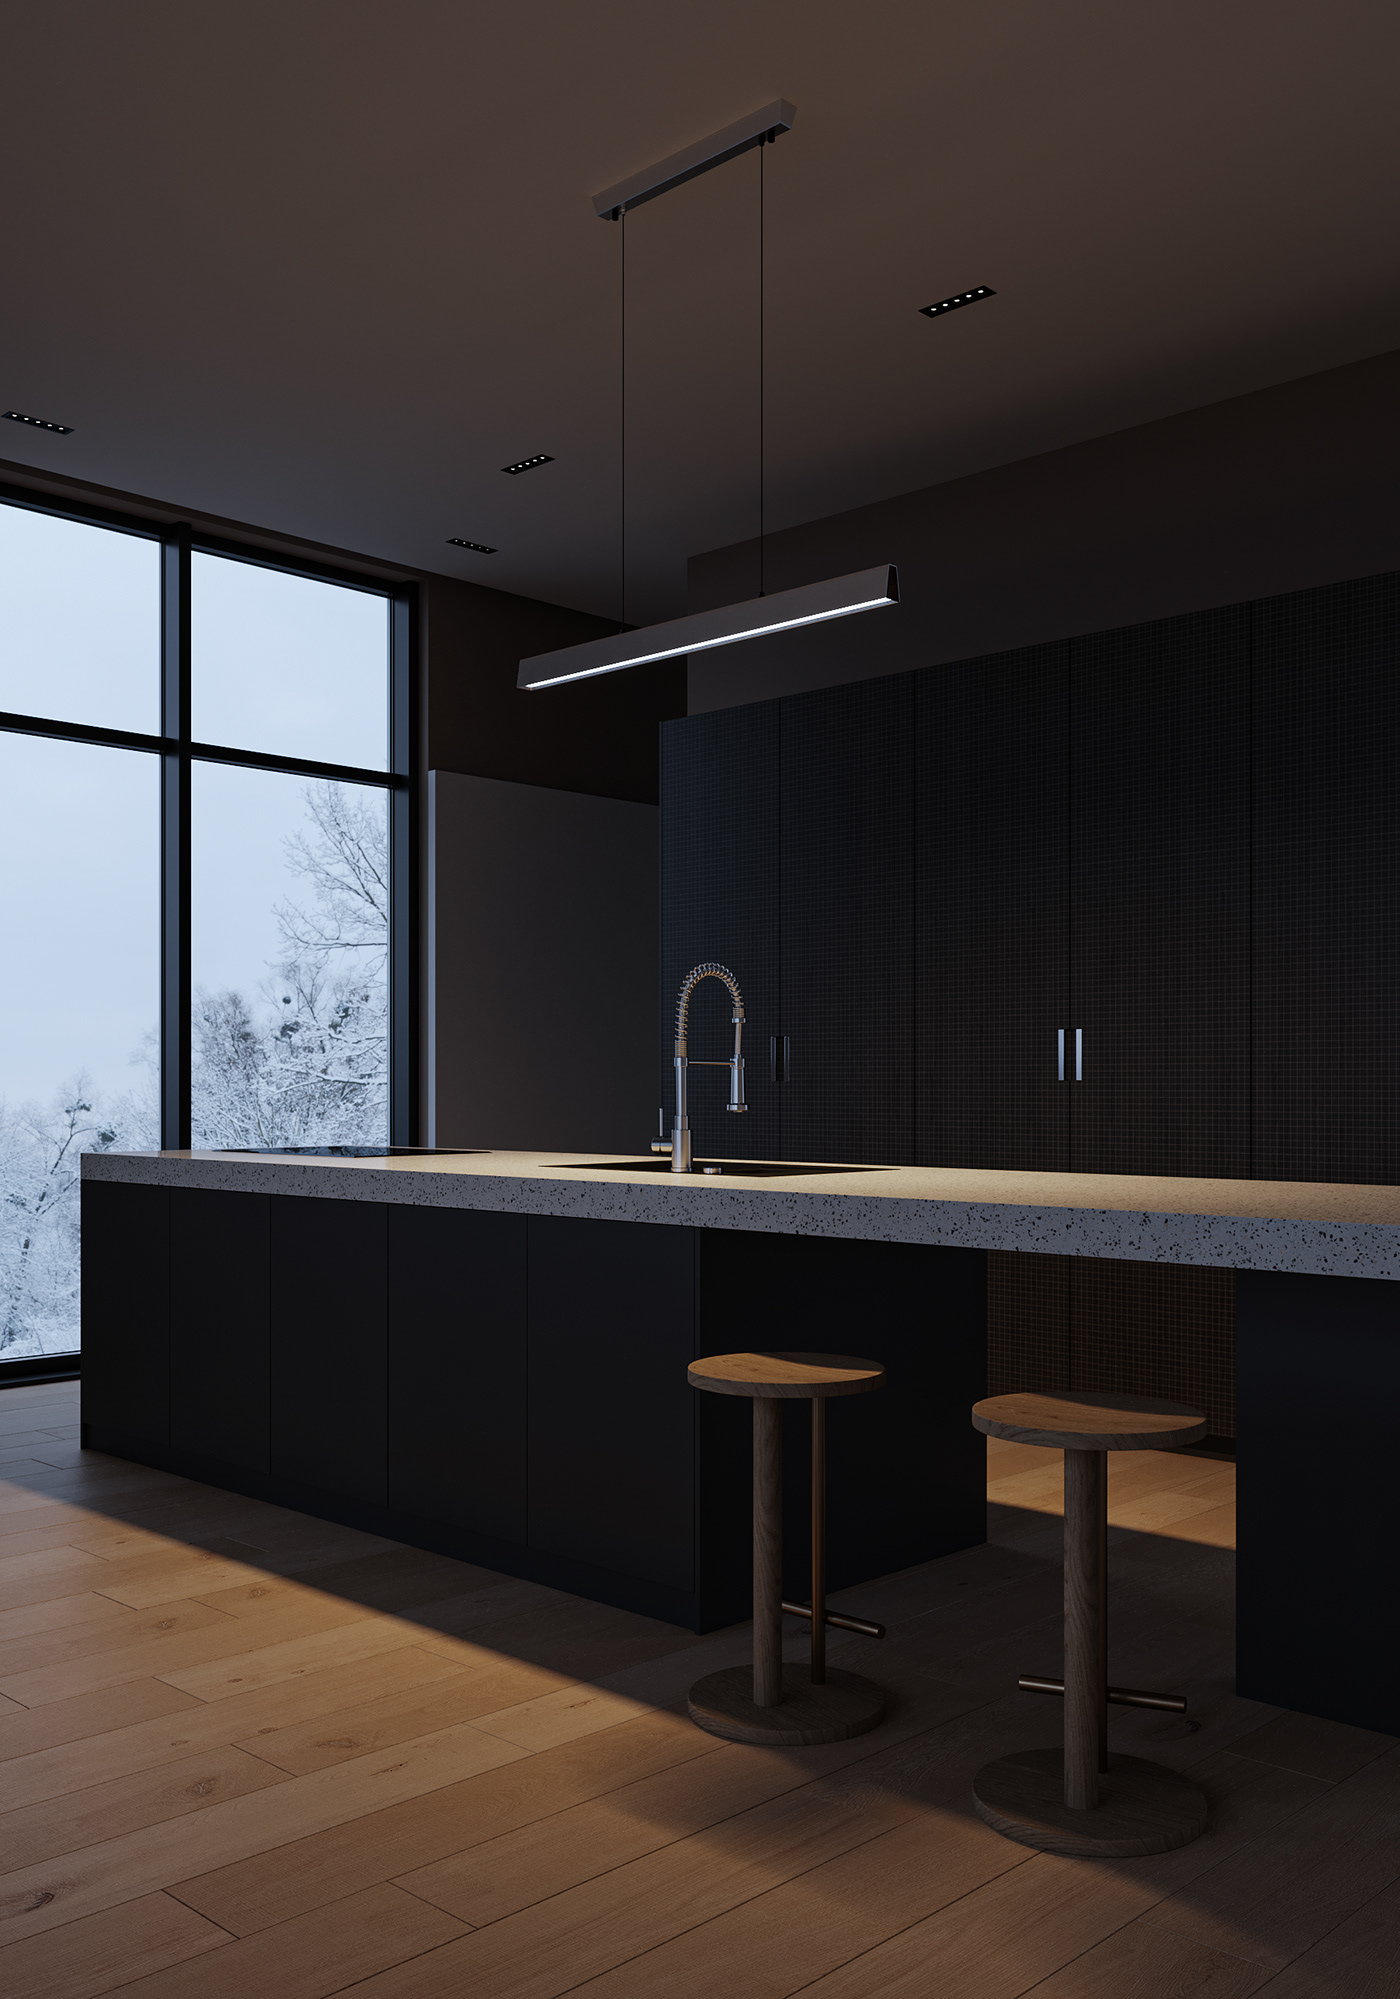 architecture interior design  Minimalism design CGI visualization rendering archviz kitchen kitchen design